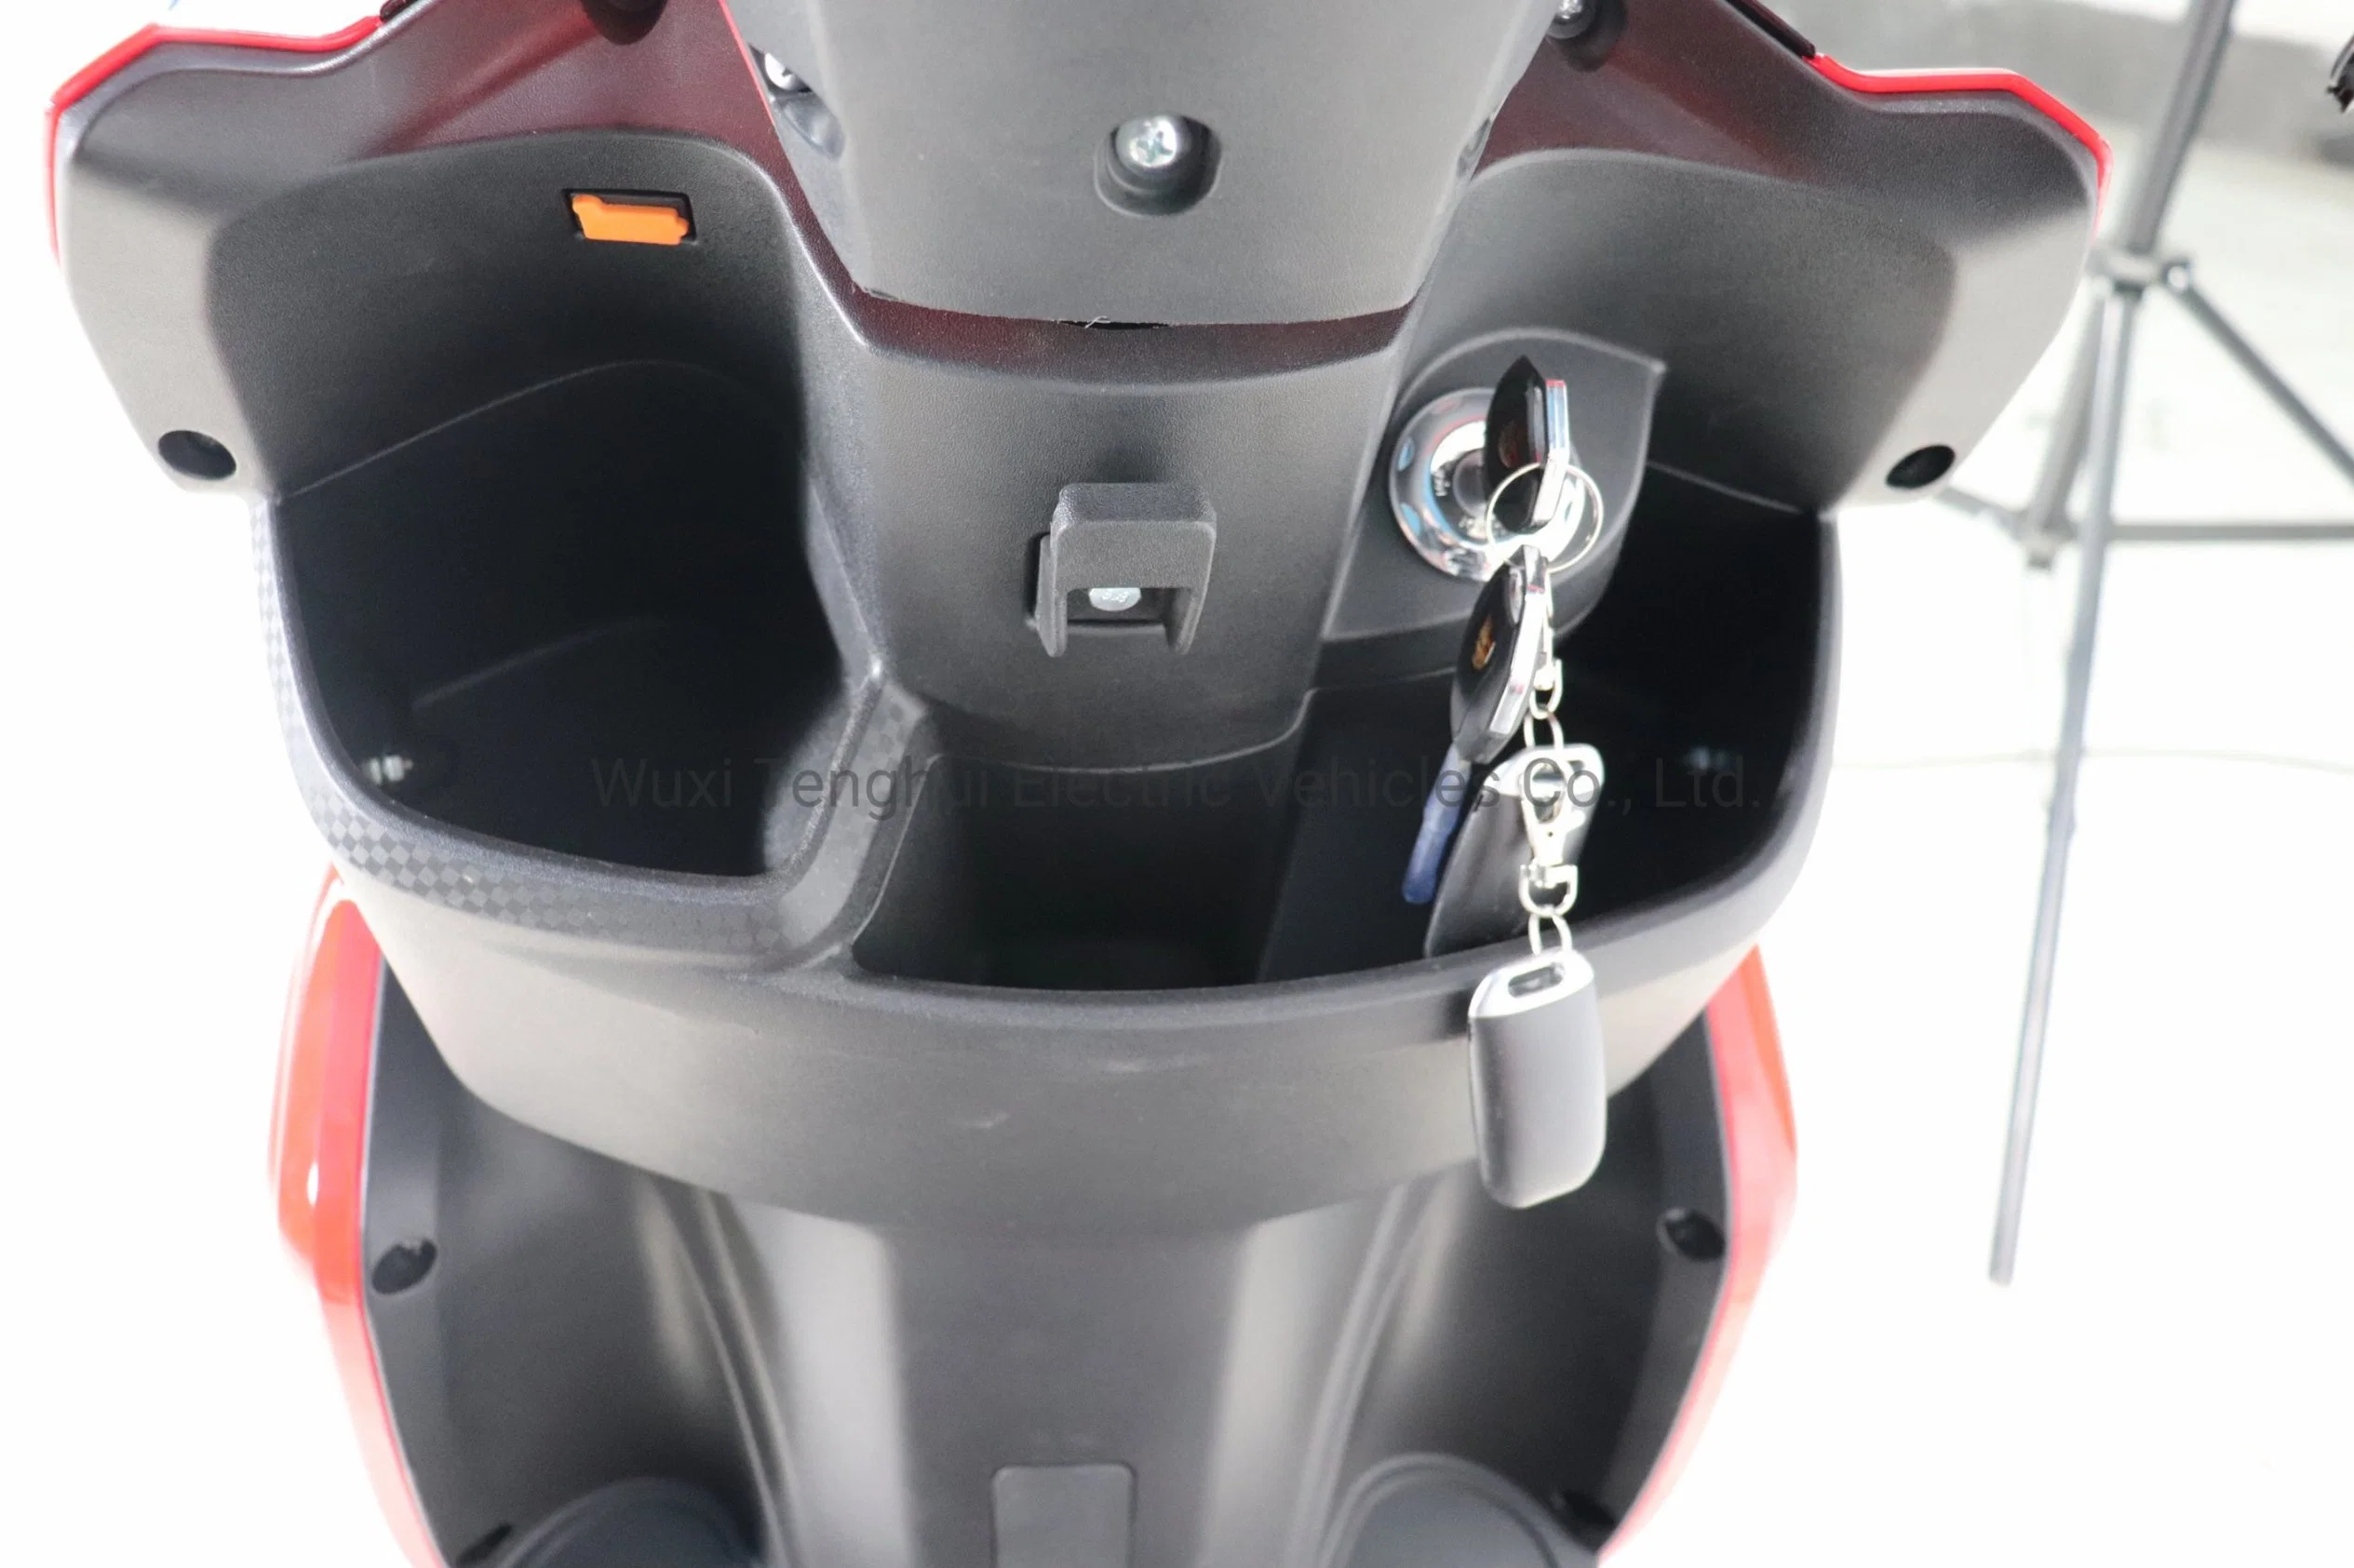 2021 Nueva actualización de Scooter eléctrico de 1000W Scooter patada bicicleta eléctrica para adulto Unisex máx.